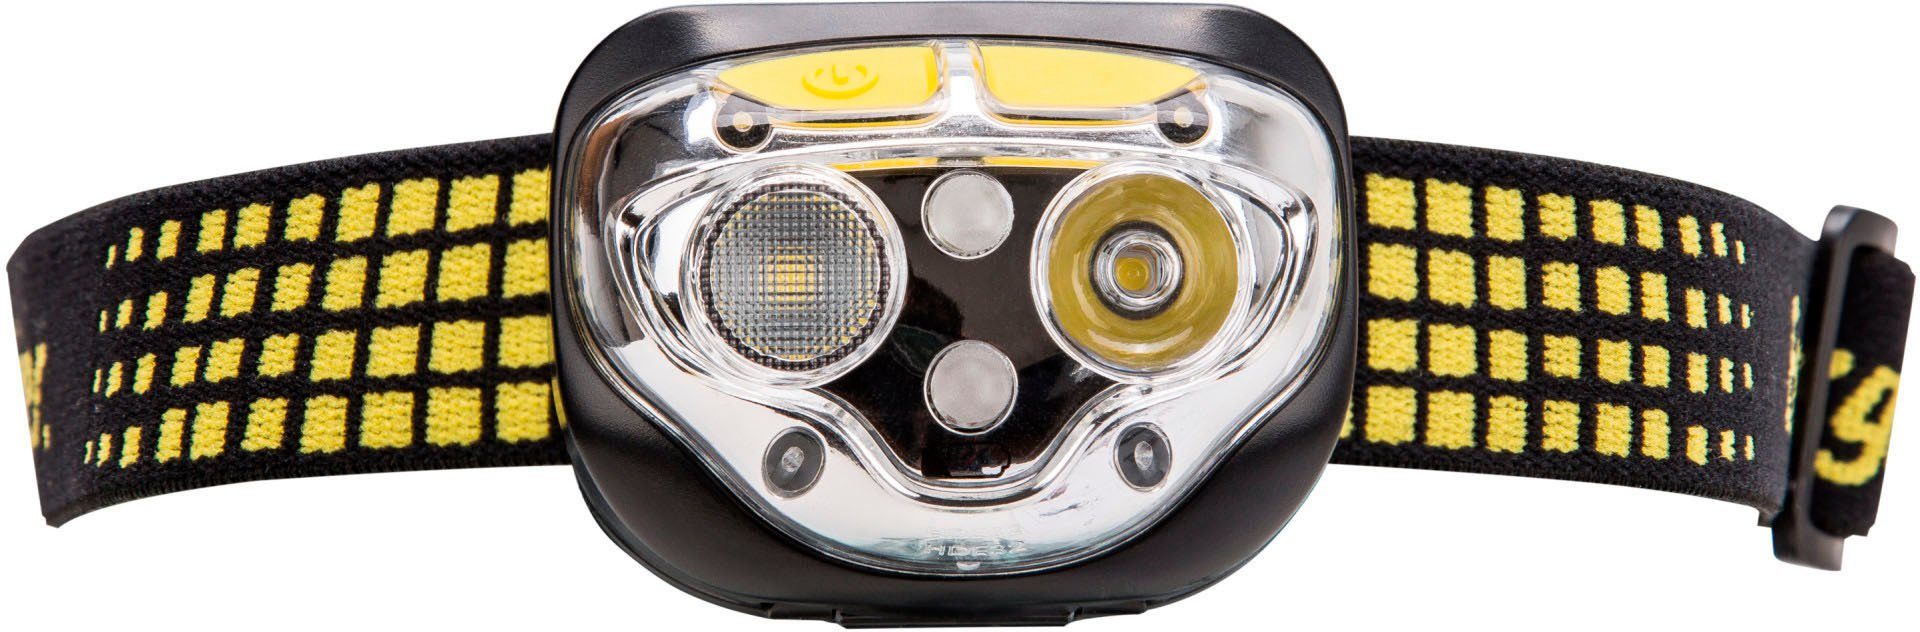 Vision Stirnlampe 450 Ultra Lumen LED Energizer